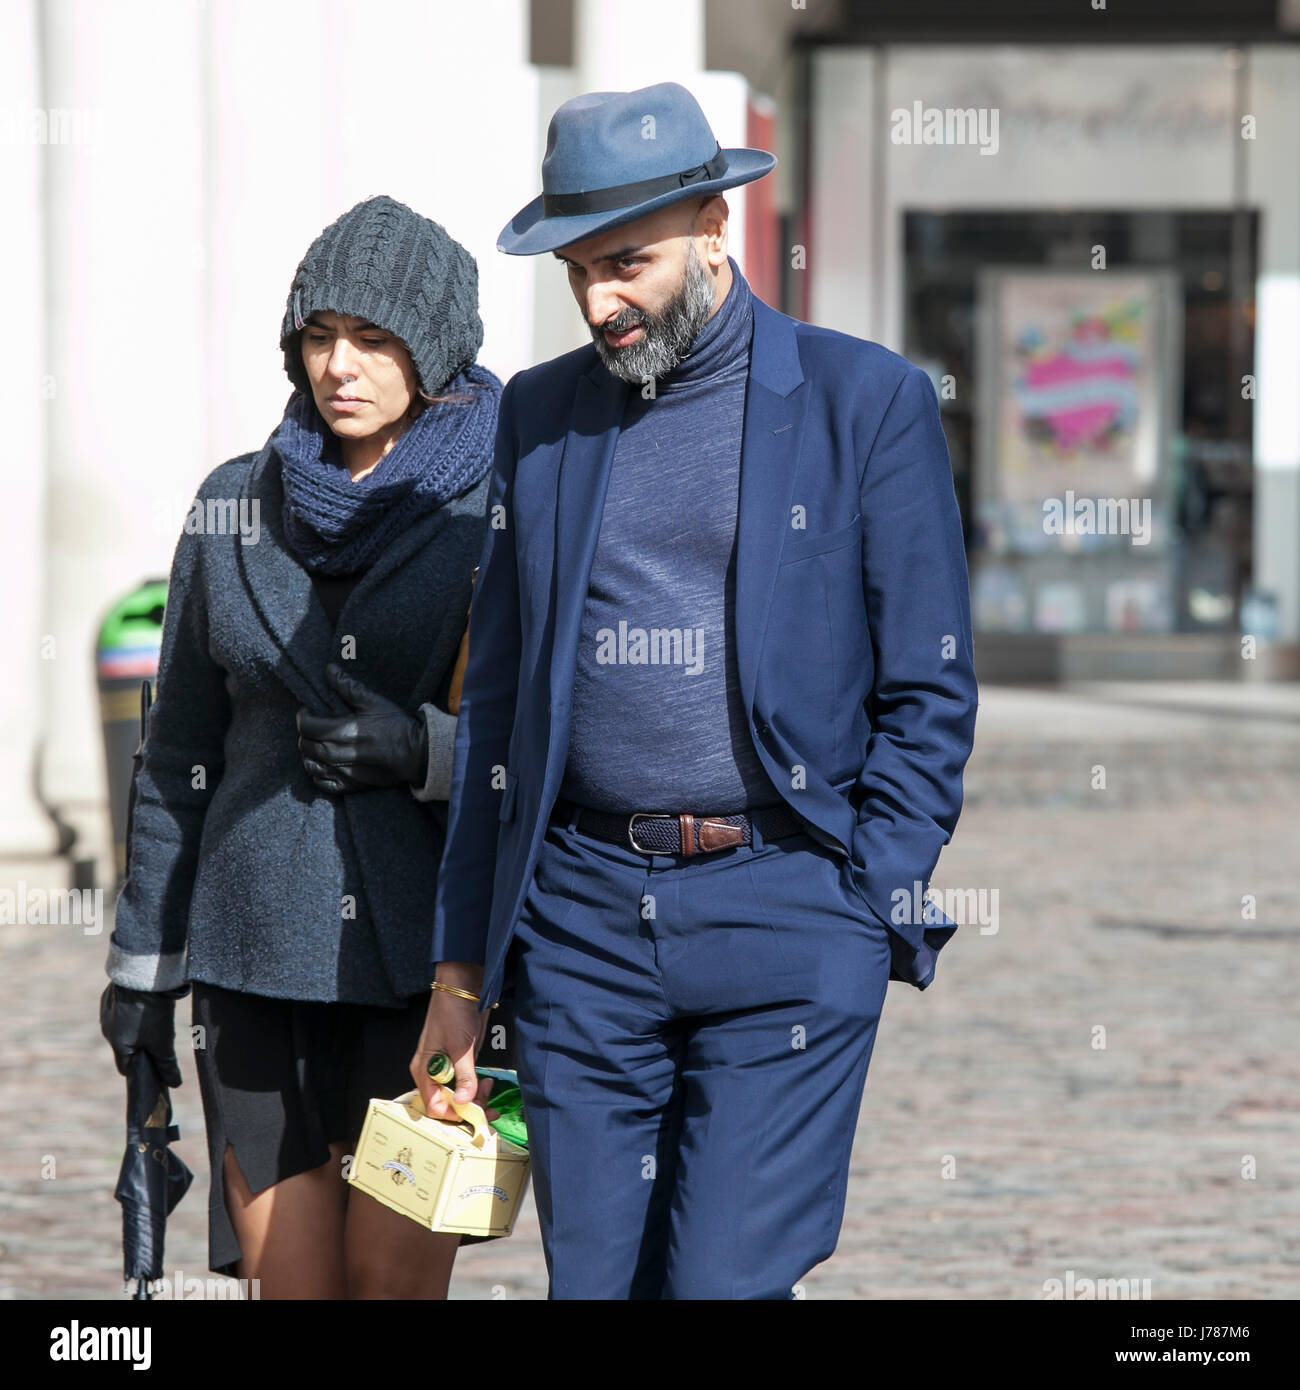 Londres, ANGLETERRE - Mars 12, 2017 à un homme et de la femme de costumes bleus et de chapeaux de marcher dans les rues de Covent Garden. Banque D'Images